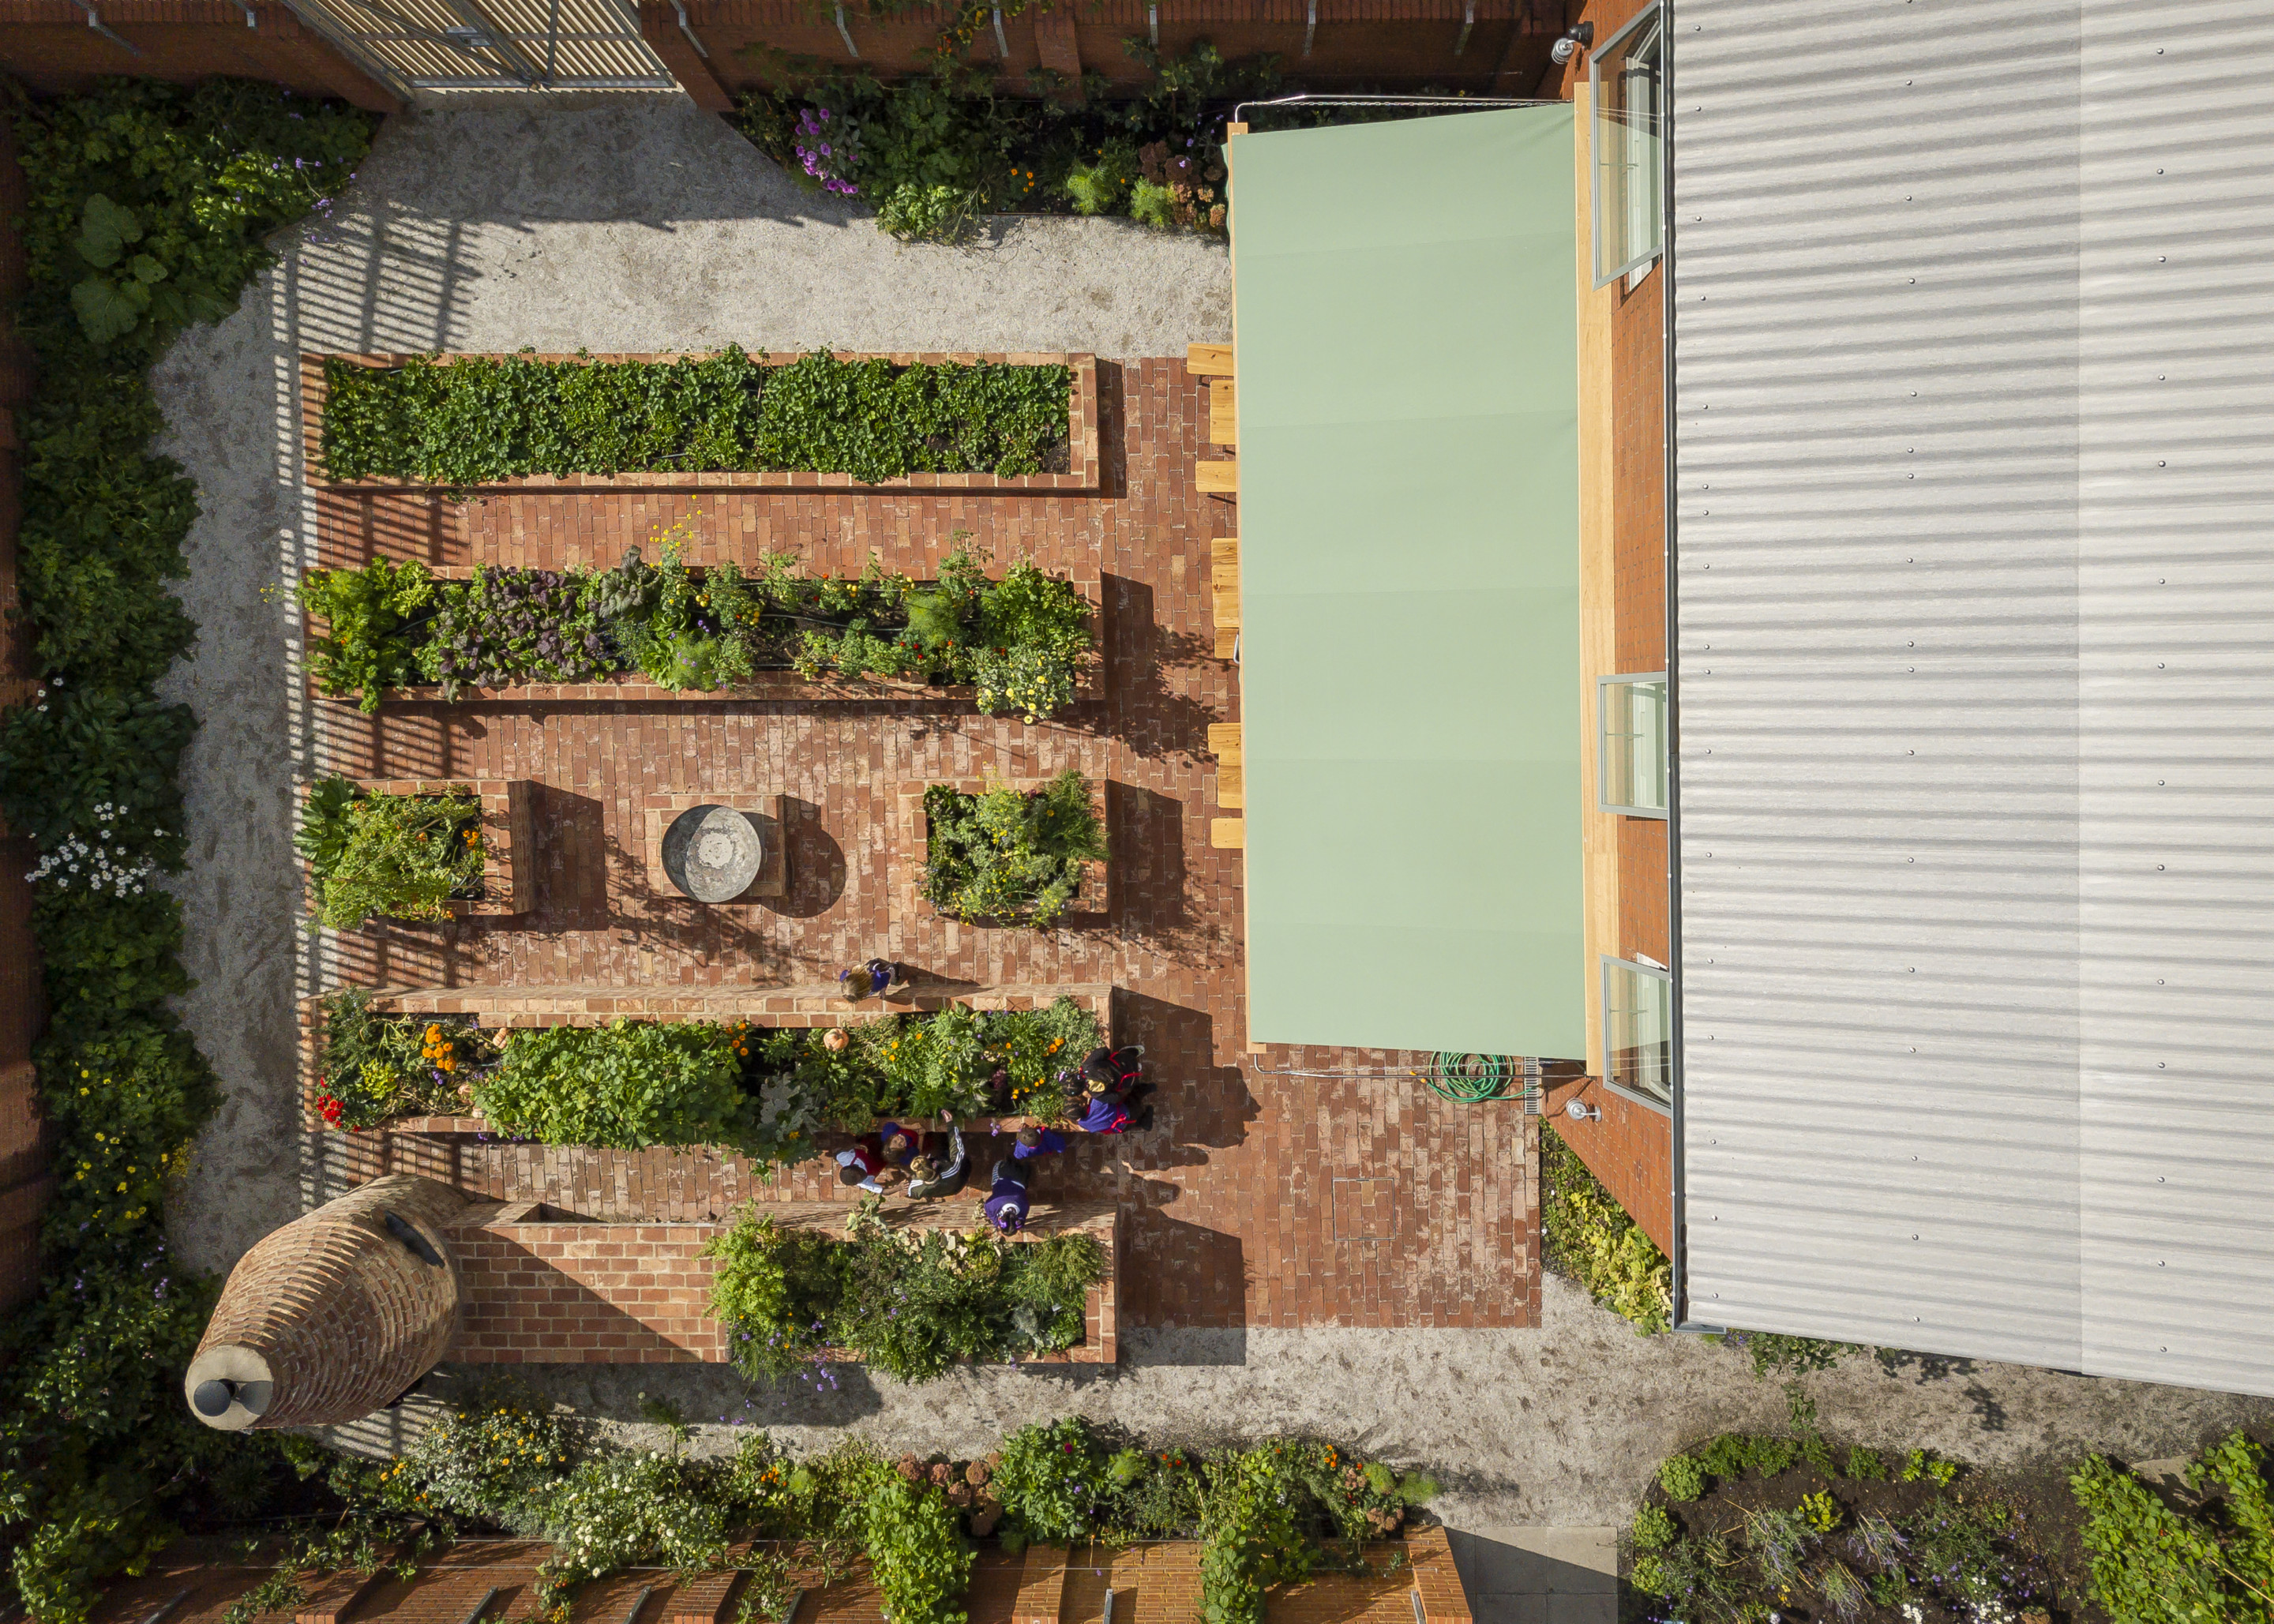 Aerial photo of a brick garden